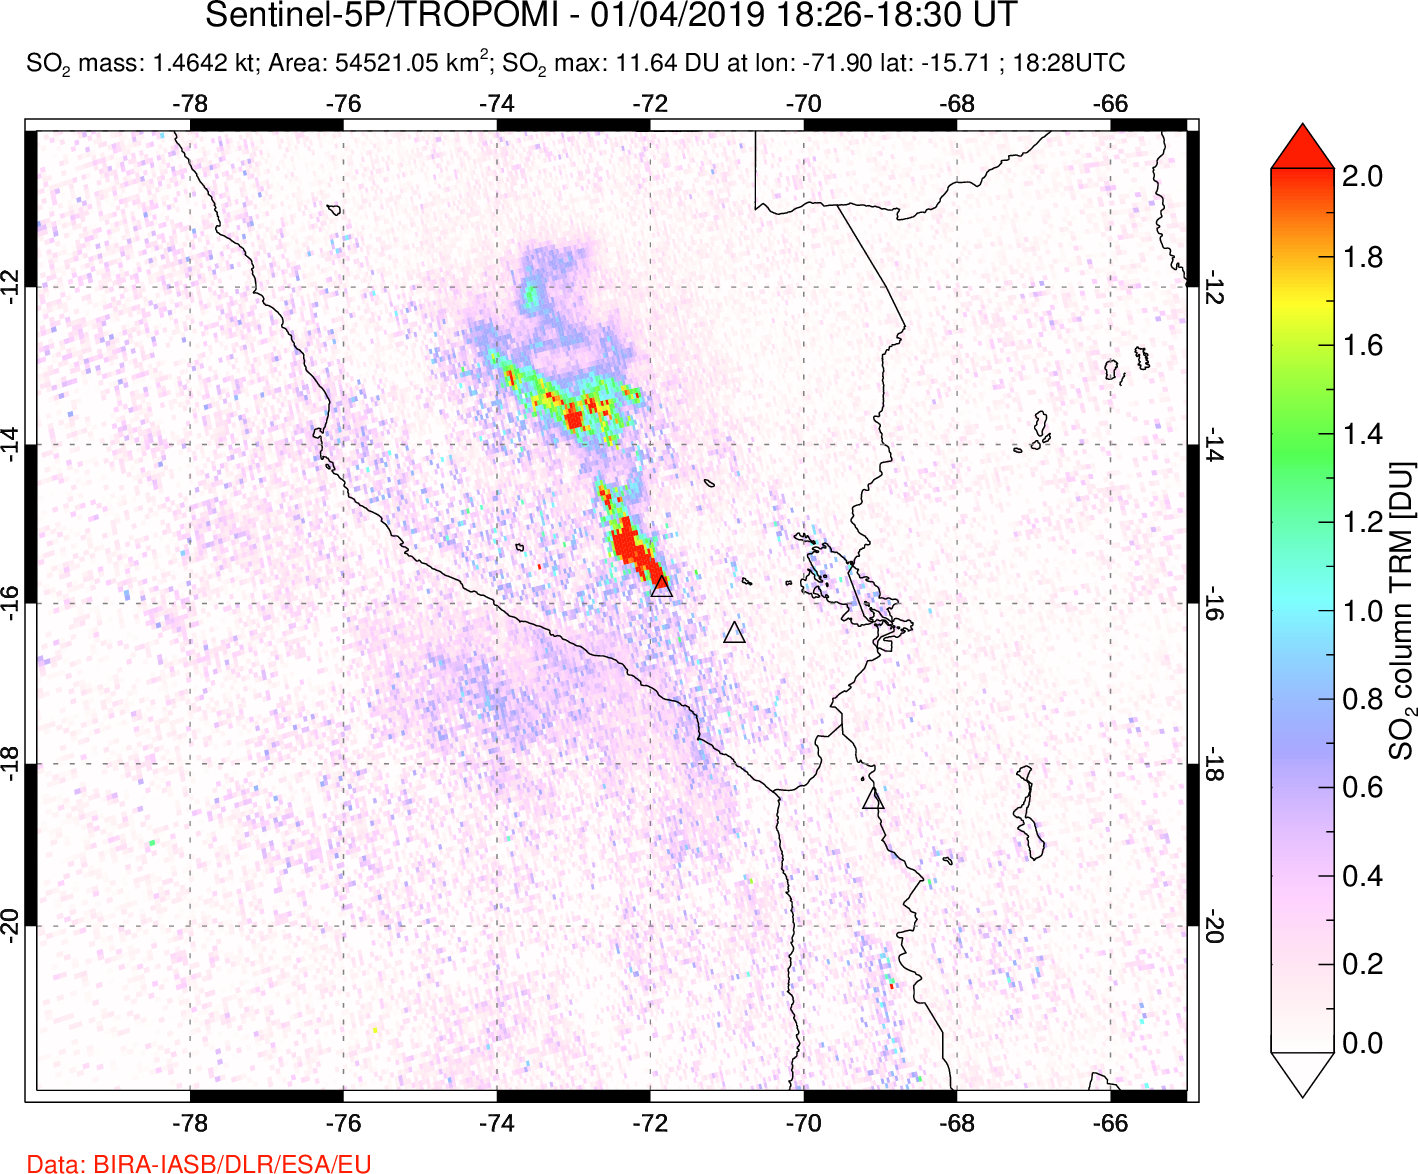 A sulfur dioxide image over Peru on Jan 04, 2019.